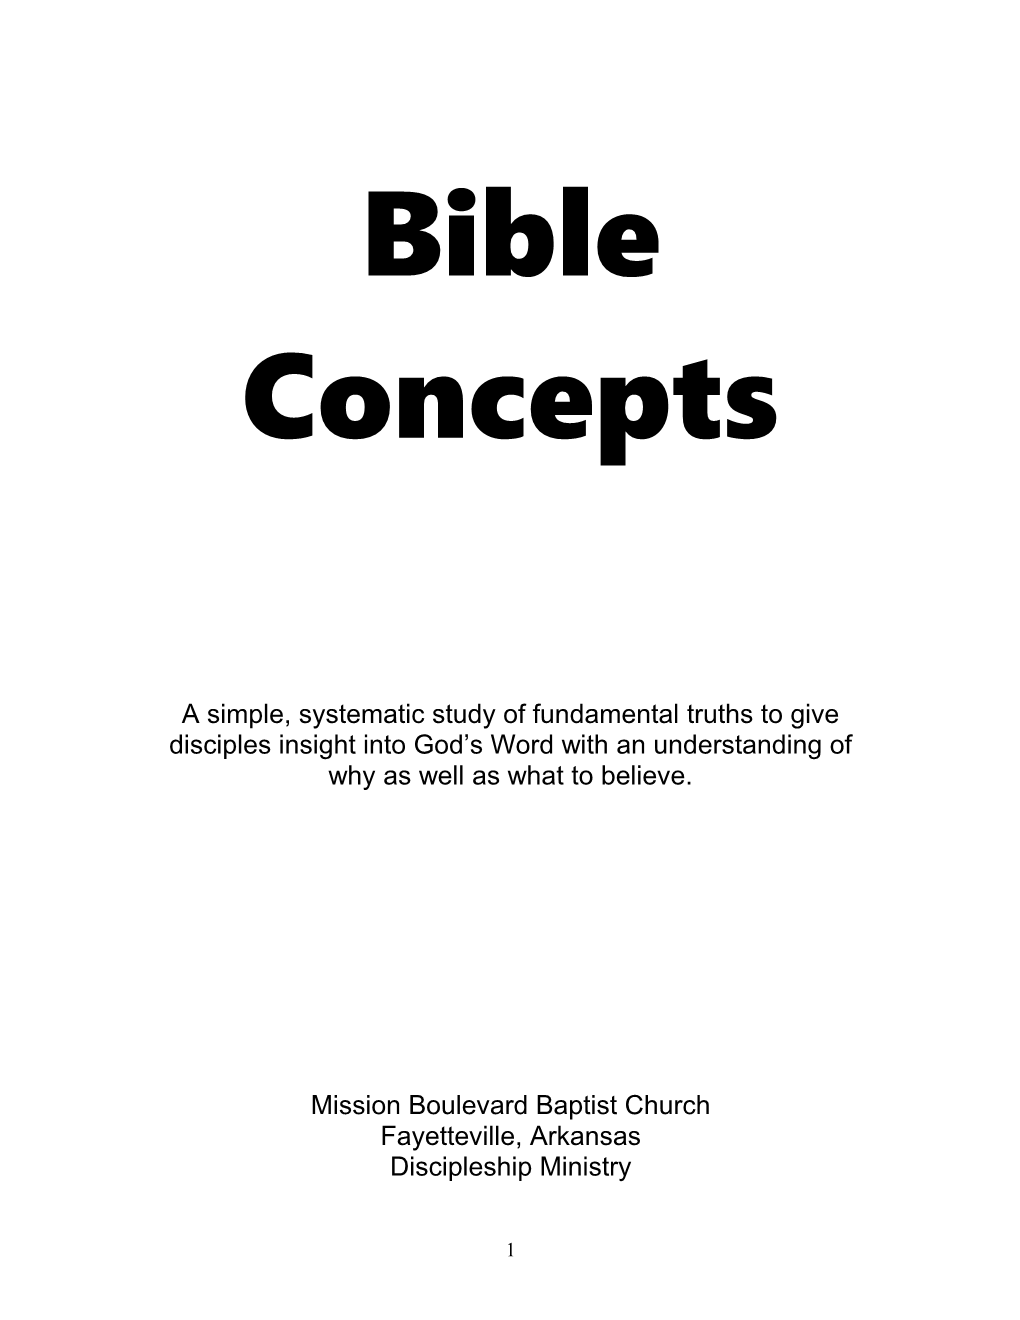 MBBC Bible Concepts